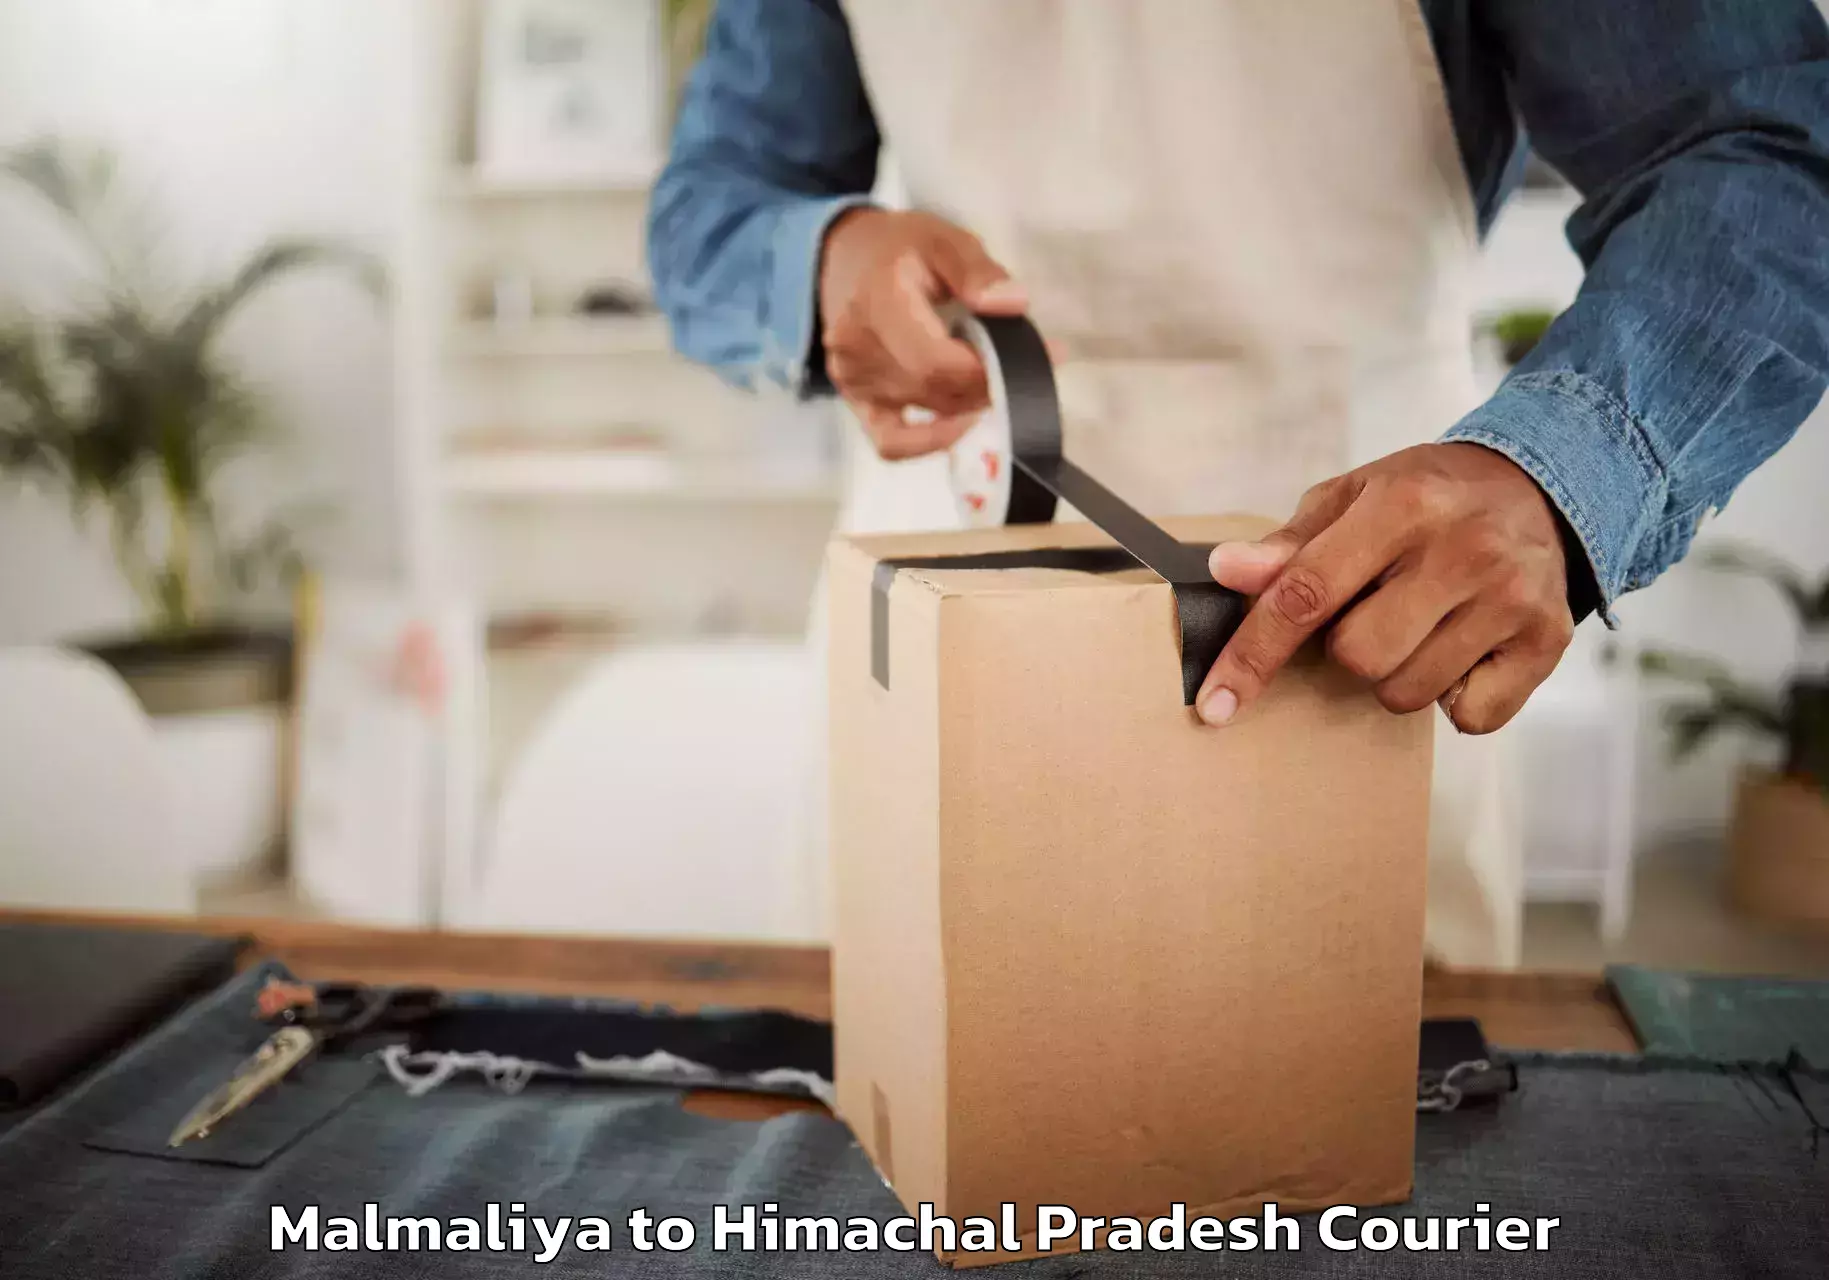 Professional furniture movers Malmaliya to Himachal Pradesh